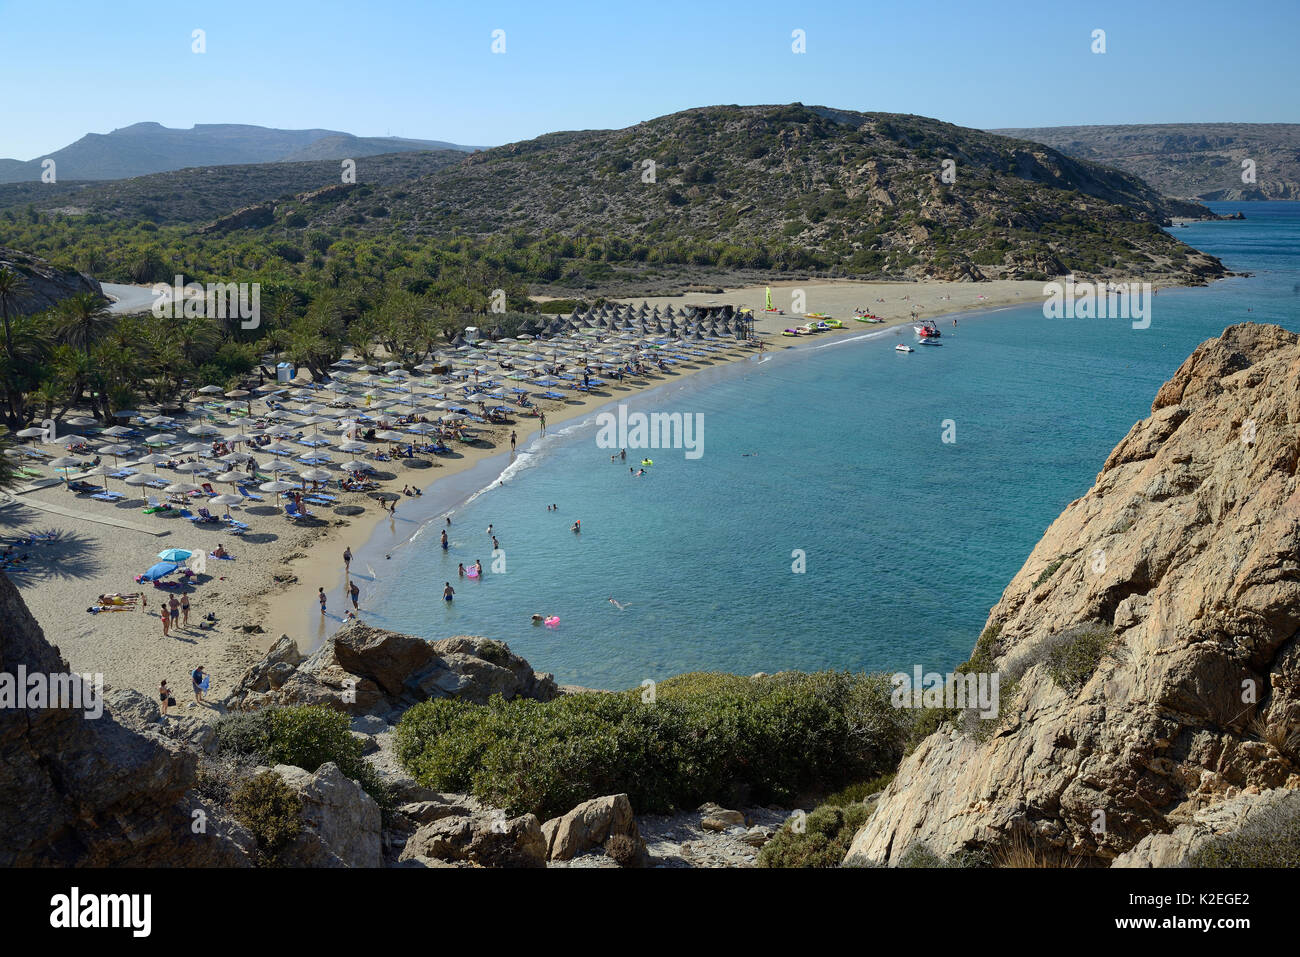 Übersicht der Strand von Vai und die kretische Dattelpalme (Phoenix theophrasti) Wald in peak Tourismus Saison, Lasithi, Kreta, Griechenland, Juli. Stockfoto